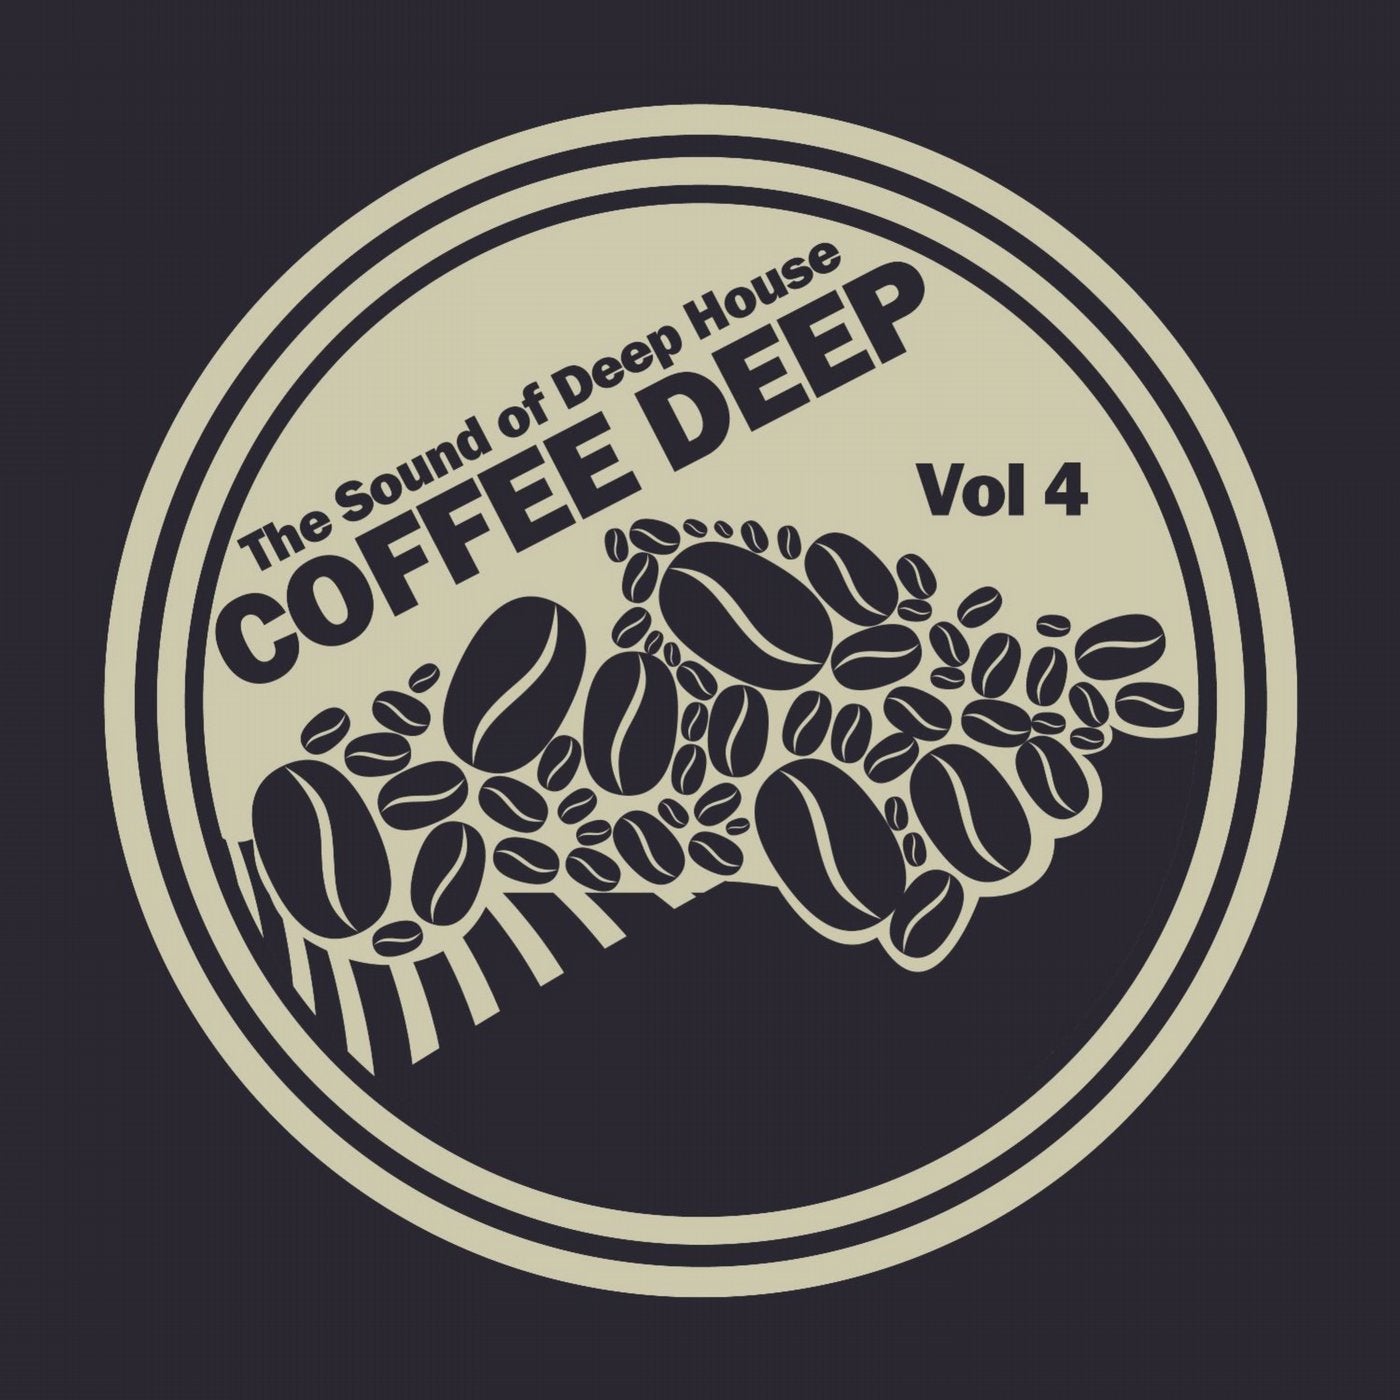 Coffee Deep House, Vol. 4